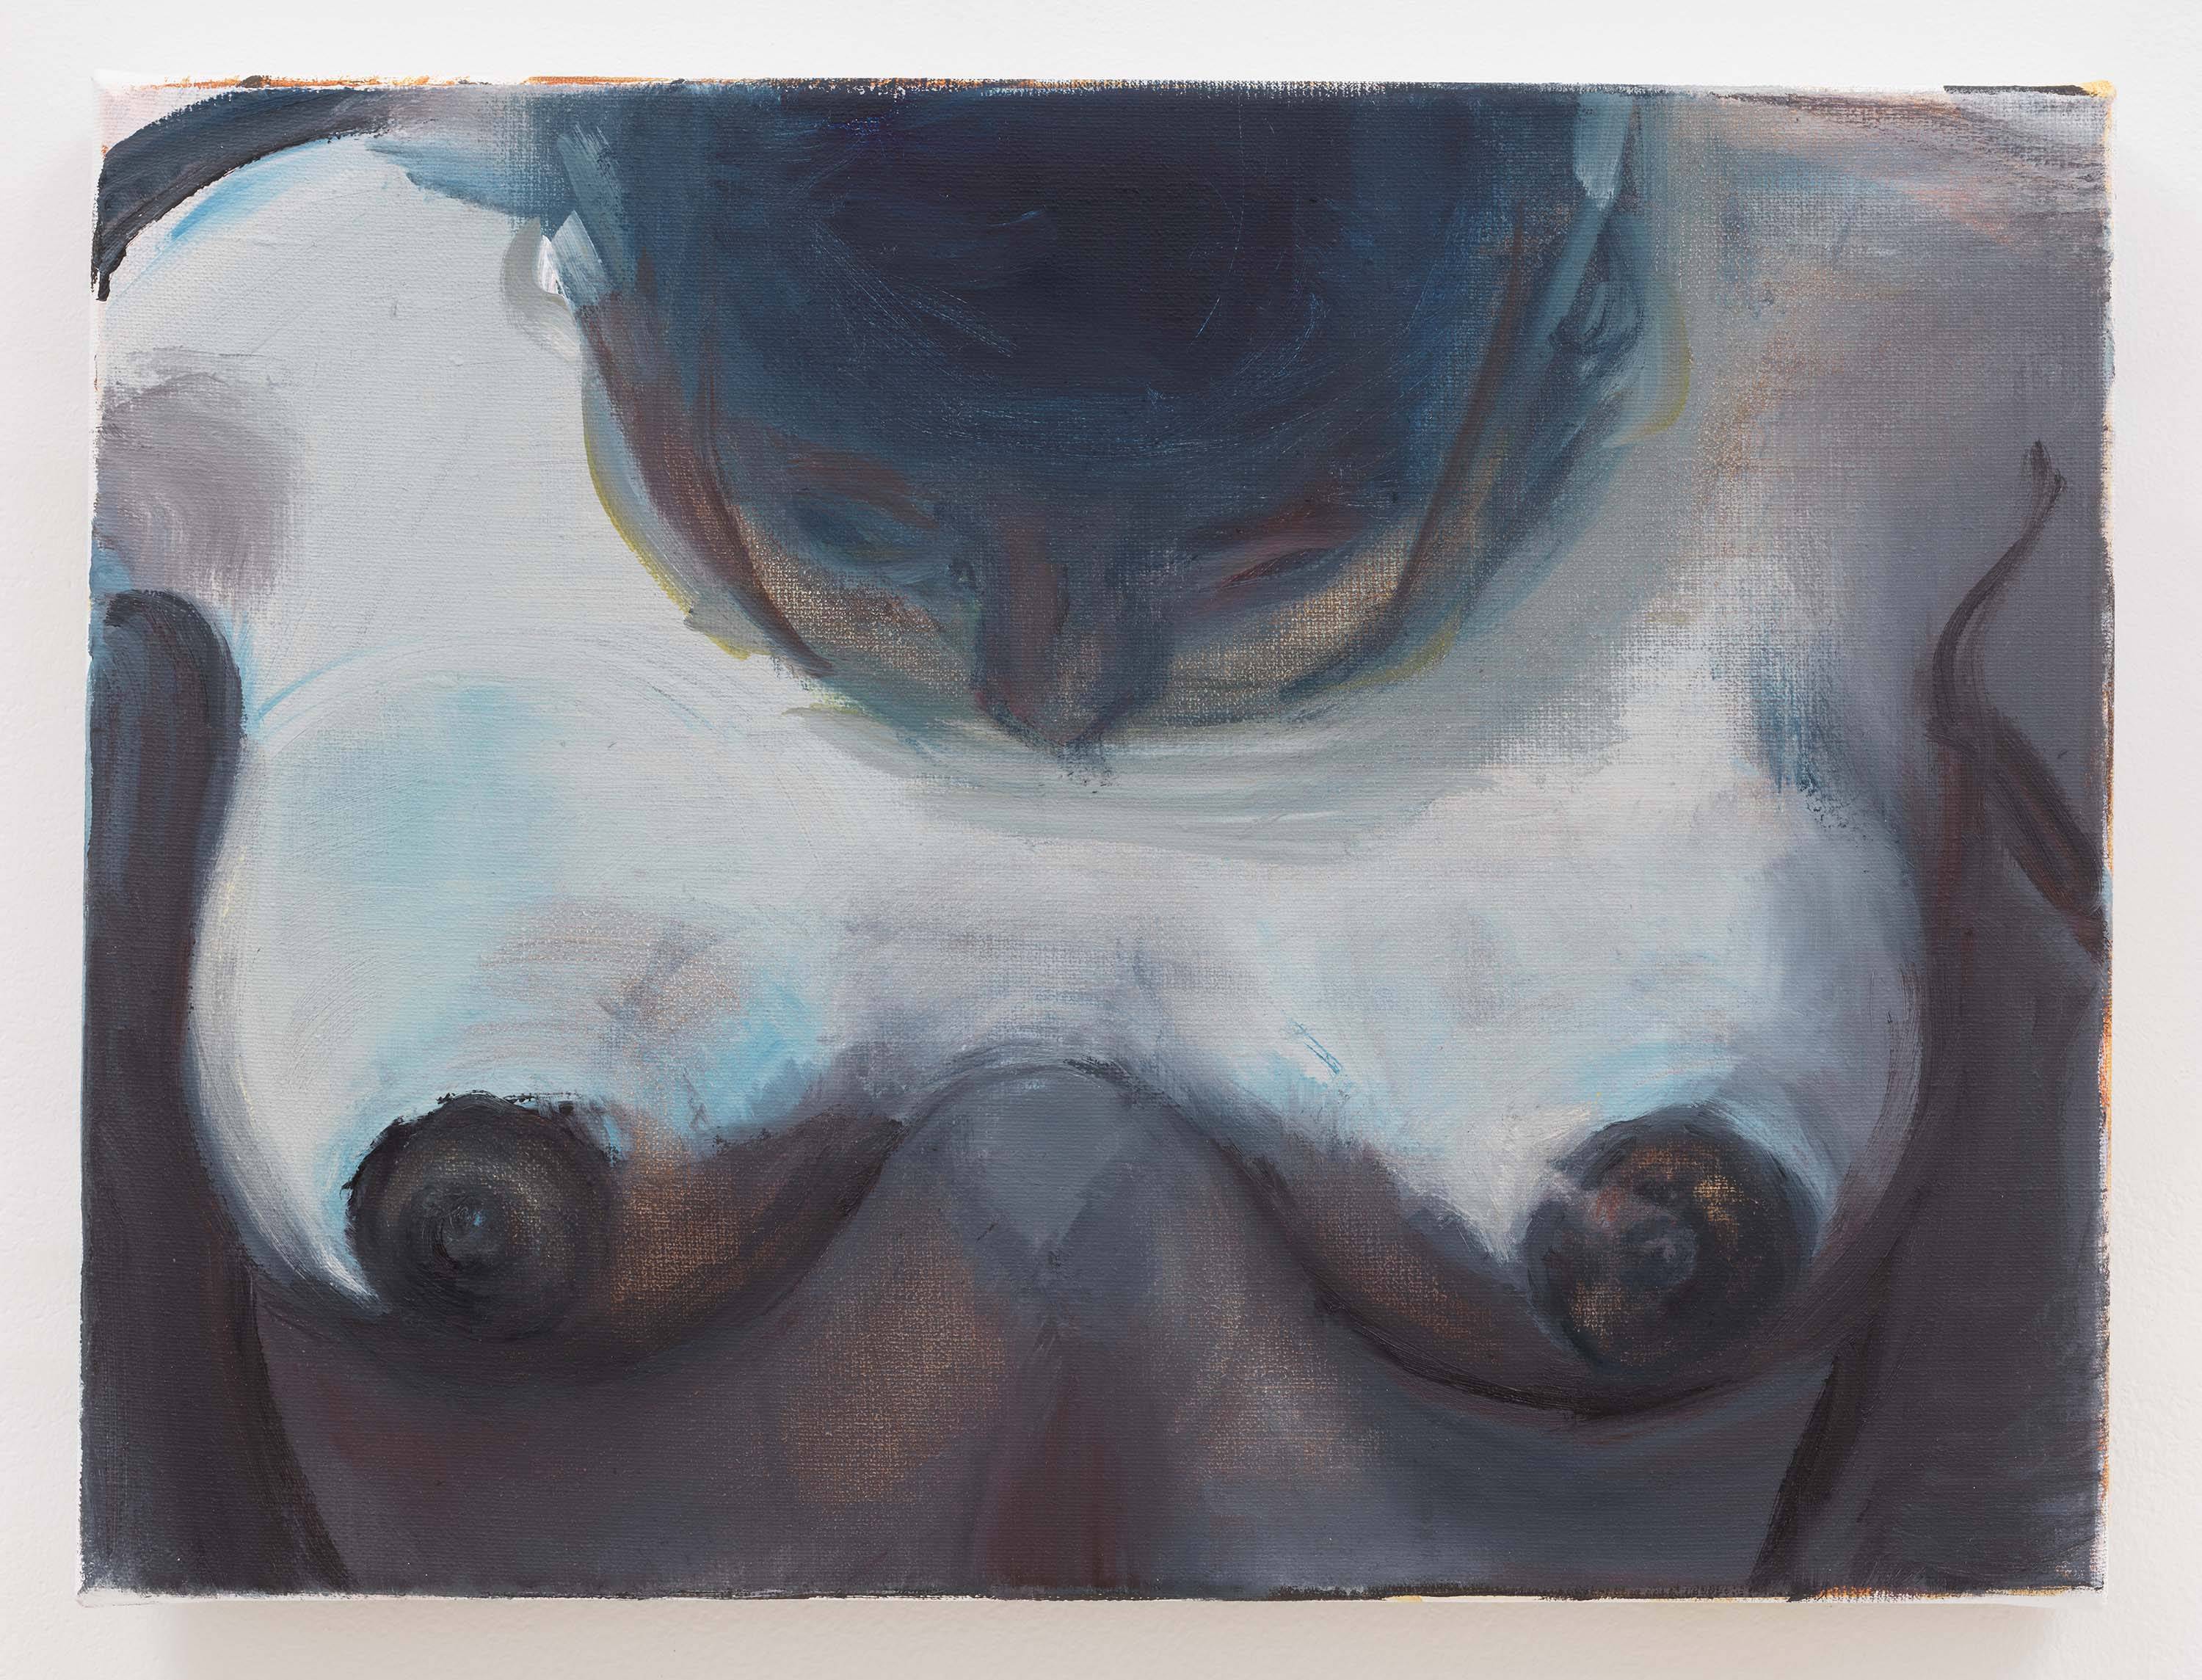 Passions, mythe et chasse à l’homme... Les toiles éprouvantes de Marlene Dumas à la galerie David Zwirner